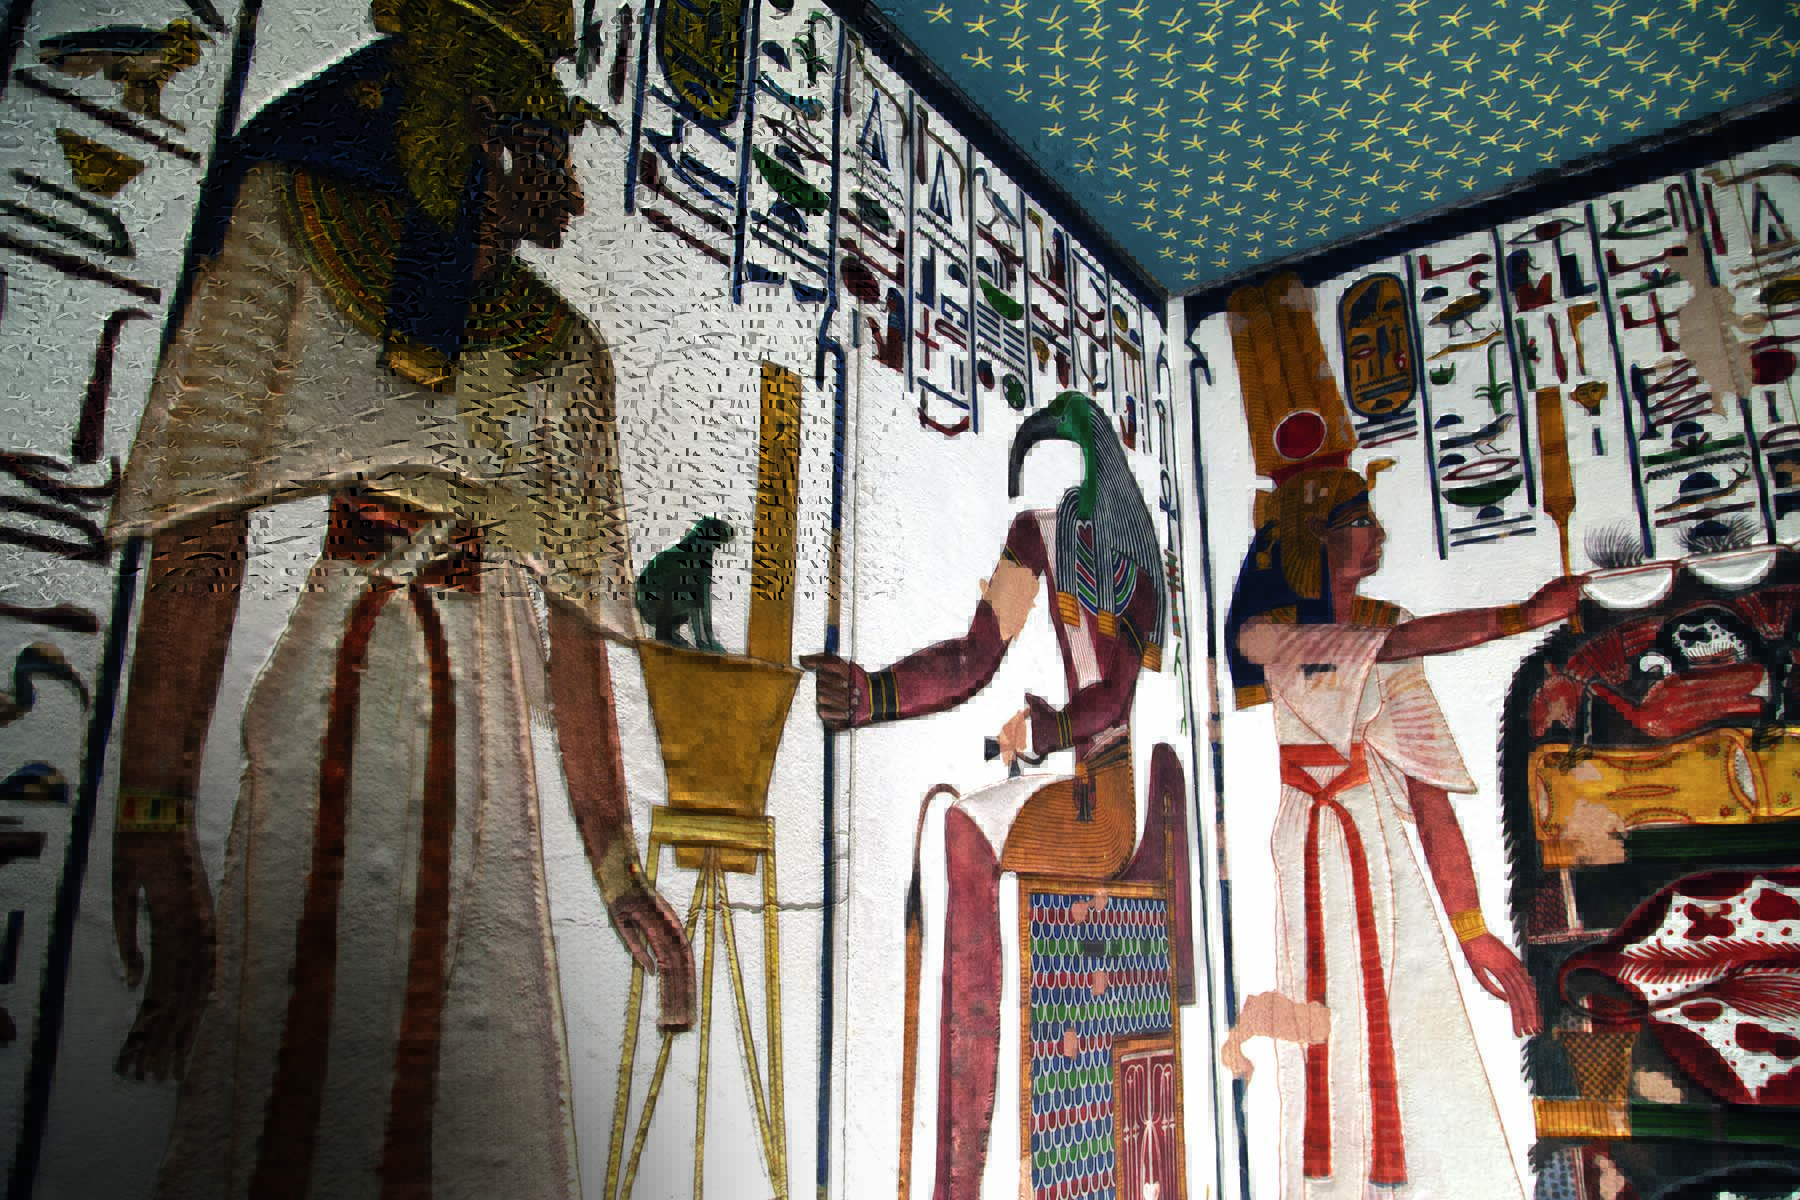 Imagem mostra parte de tumba egípcia, com desenhos e hieroglifos.